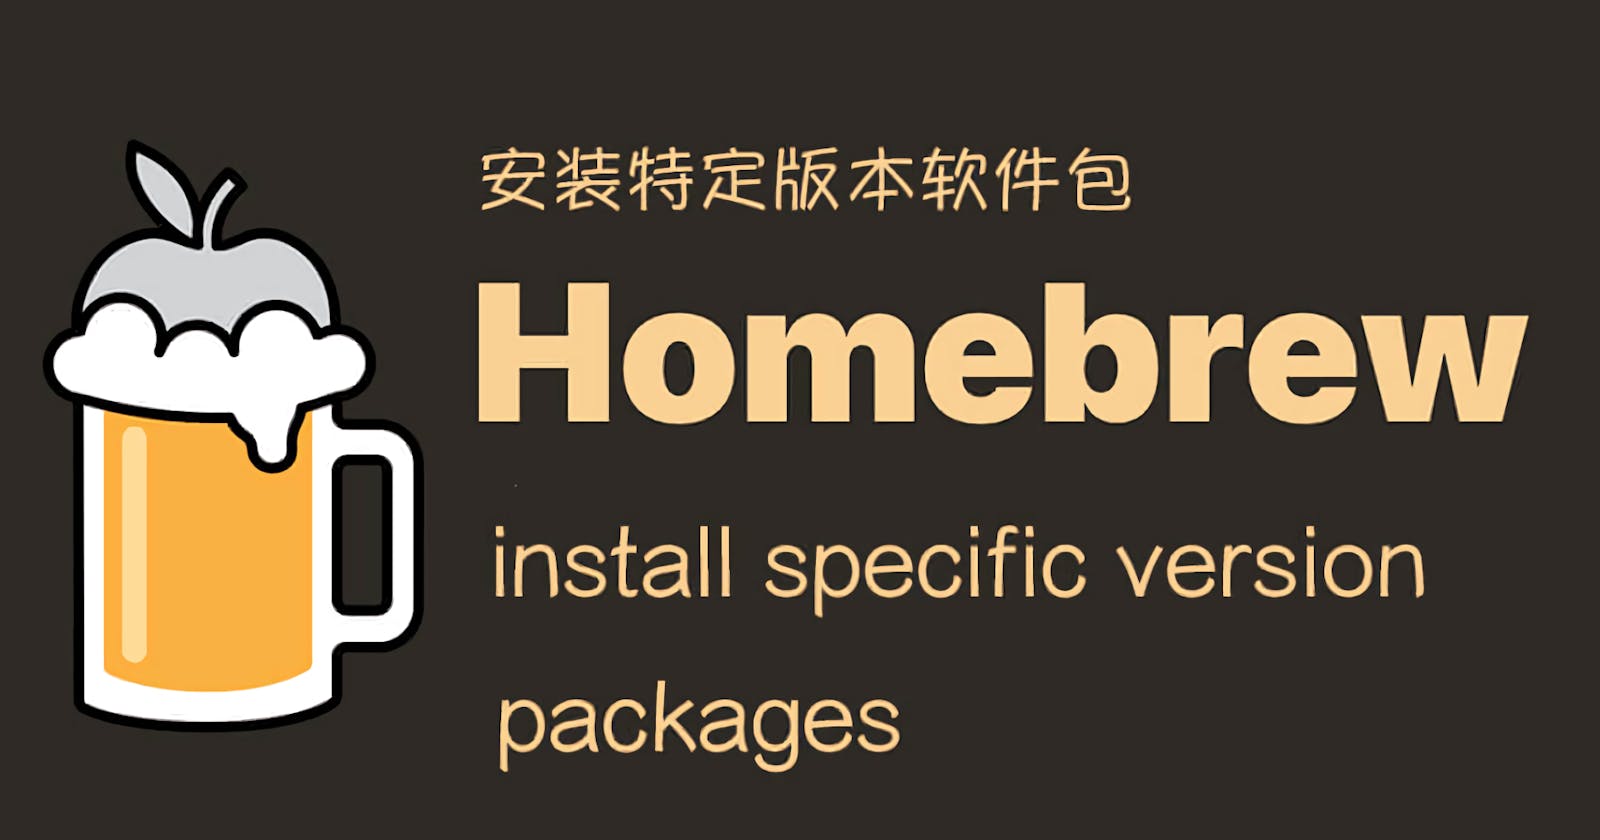 Homebrew 安装旧版本软件包,macOS 安装特定版本软件包